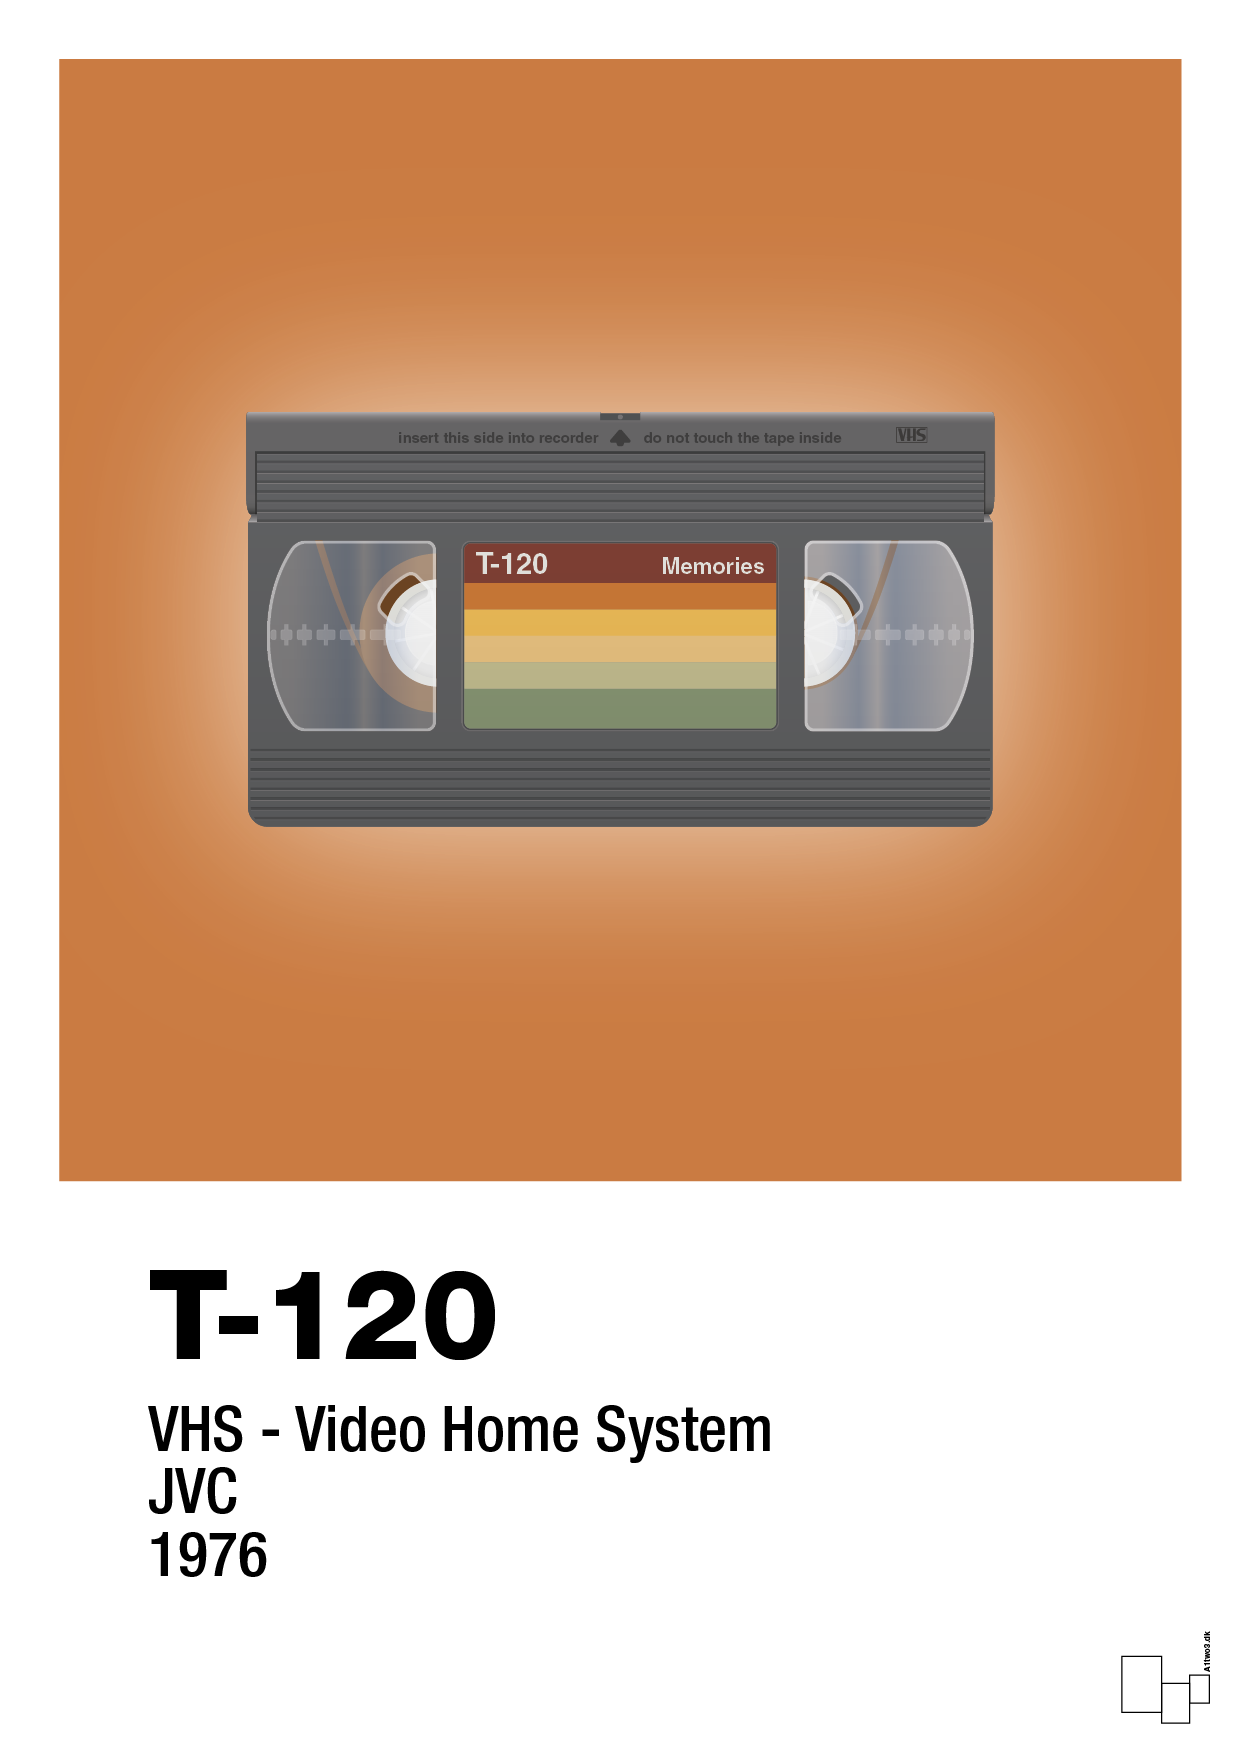 videobånd t-120 - Plakat med Grafik i Rumba Orange